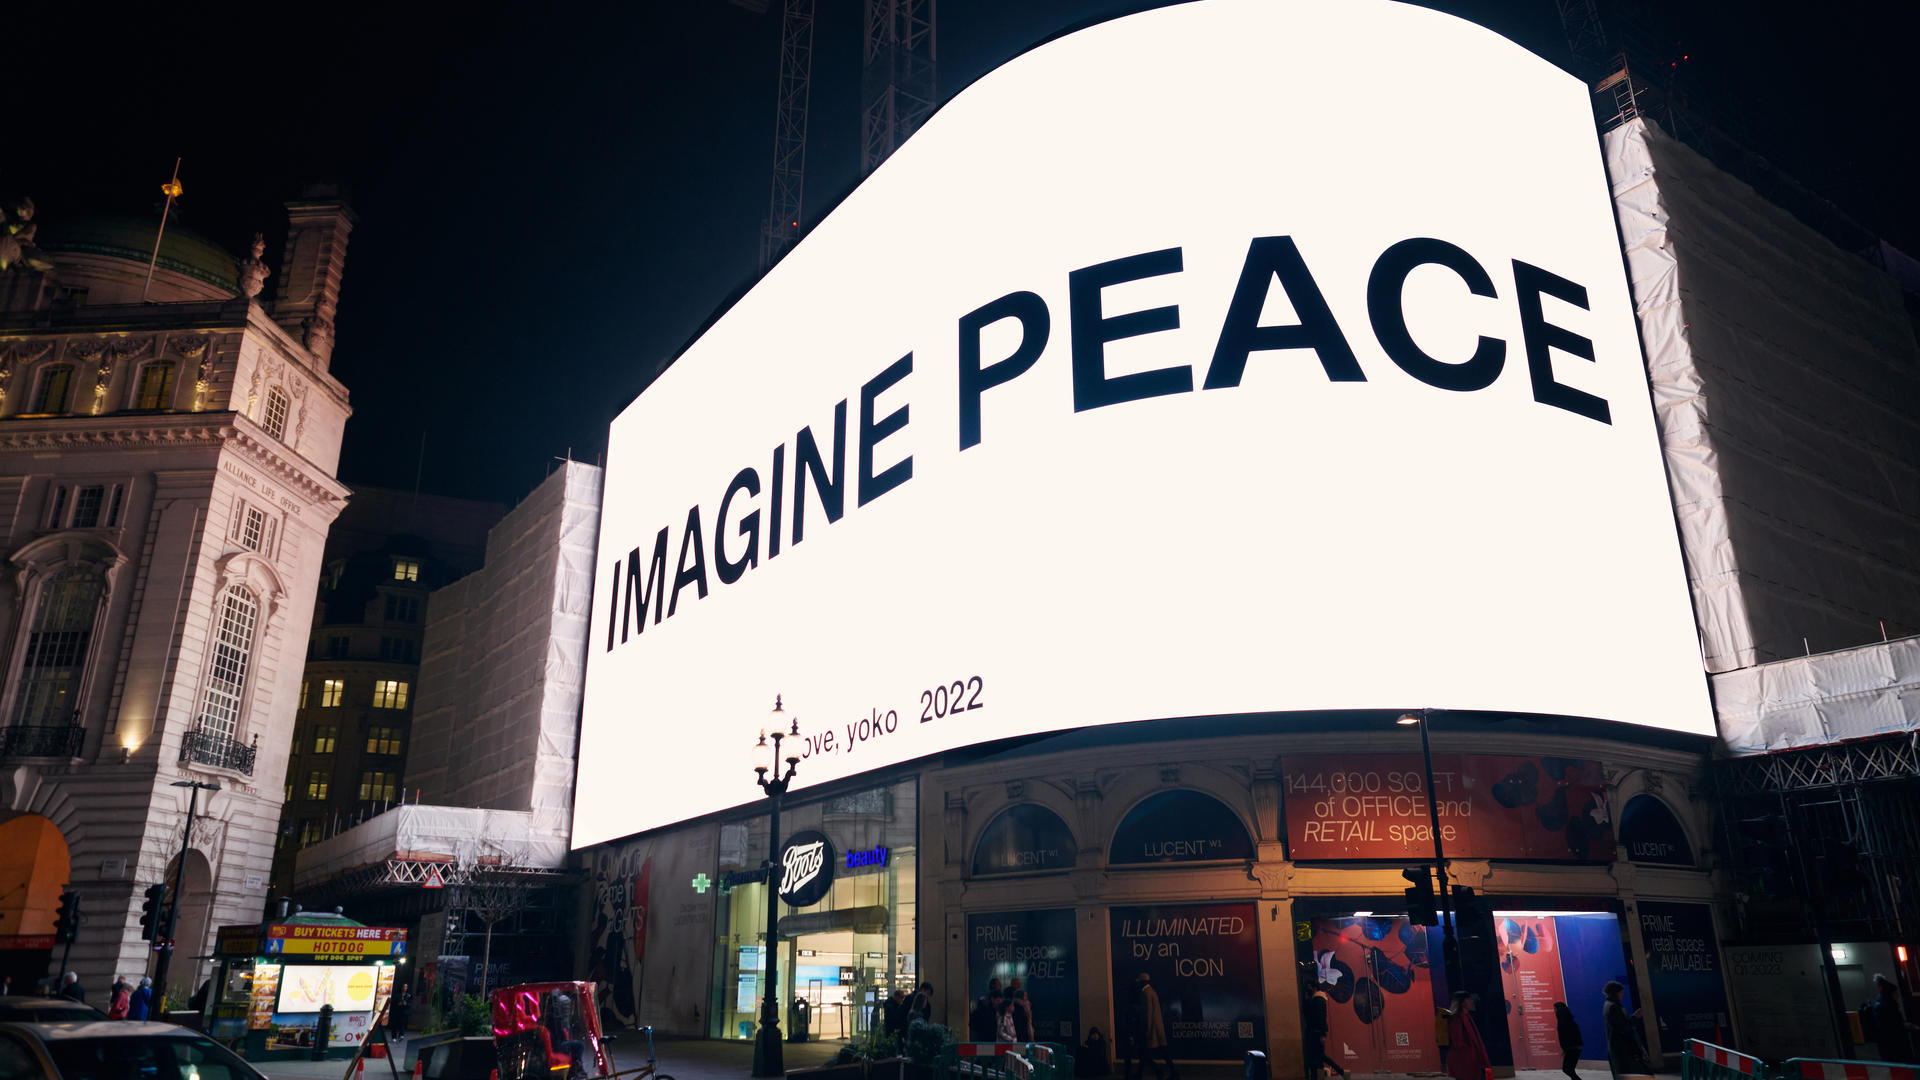 Imagine peace by Yoko